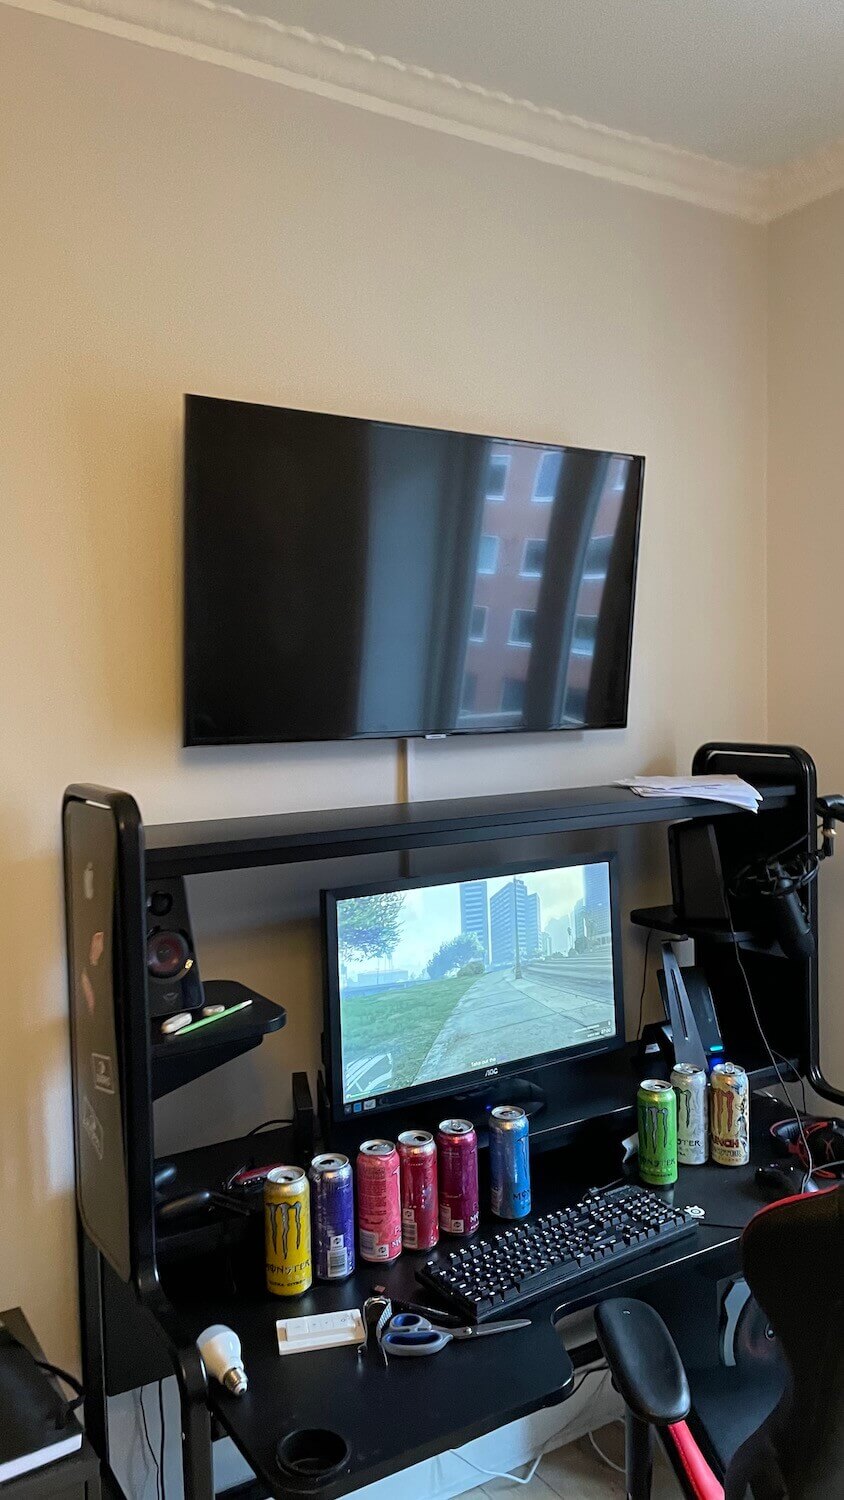 Væg-opsætning af TV på et vægbeslag med tiltfunktion